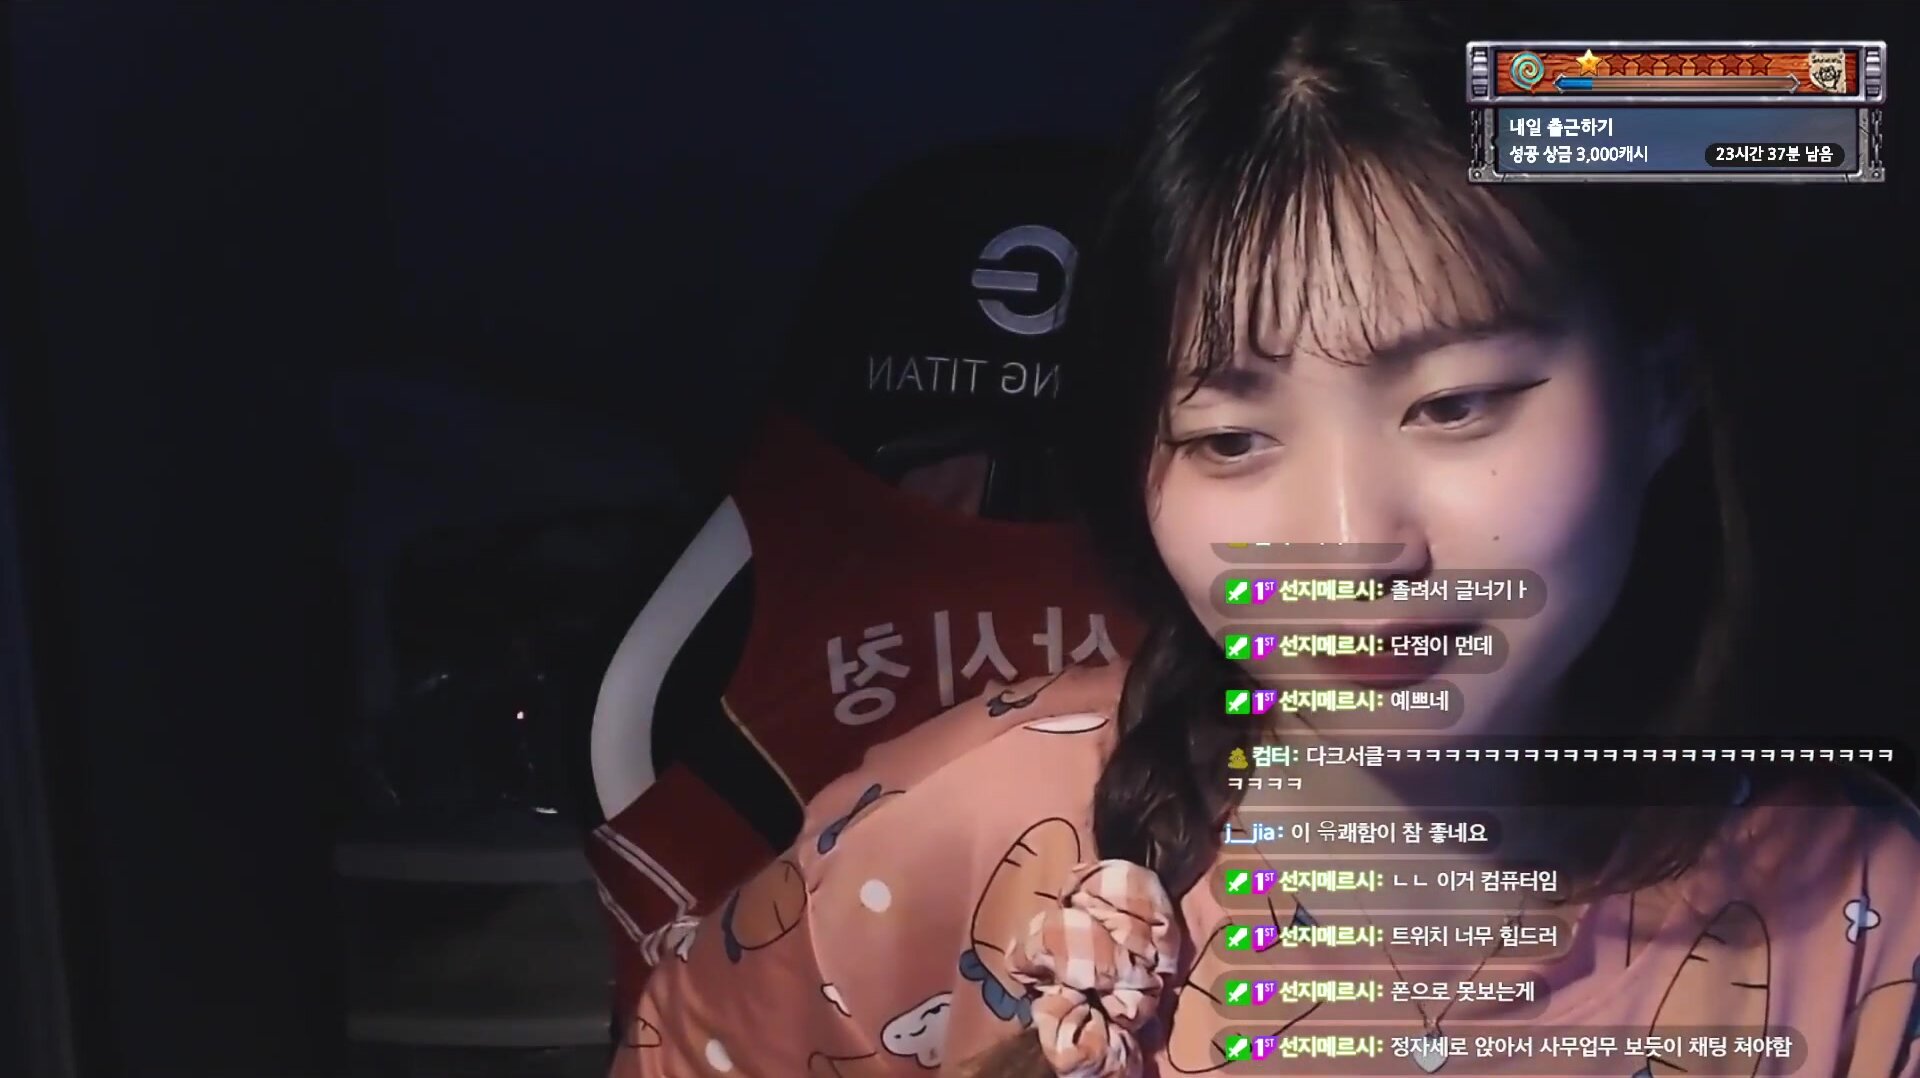 Korean Streamer Farting on Her Stream!